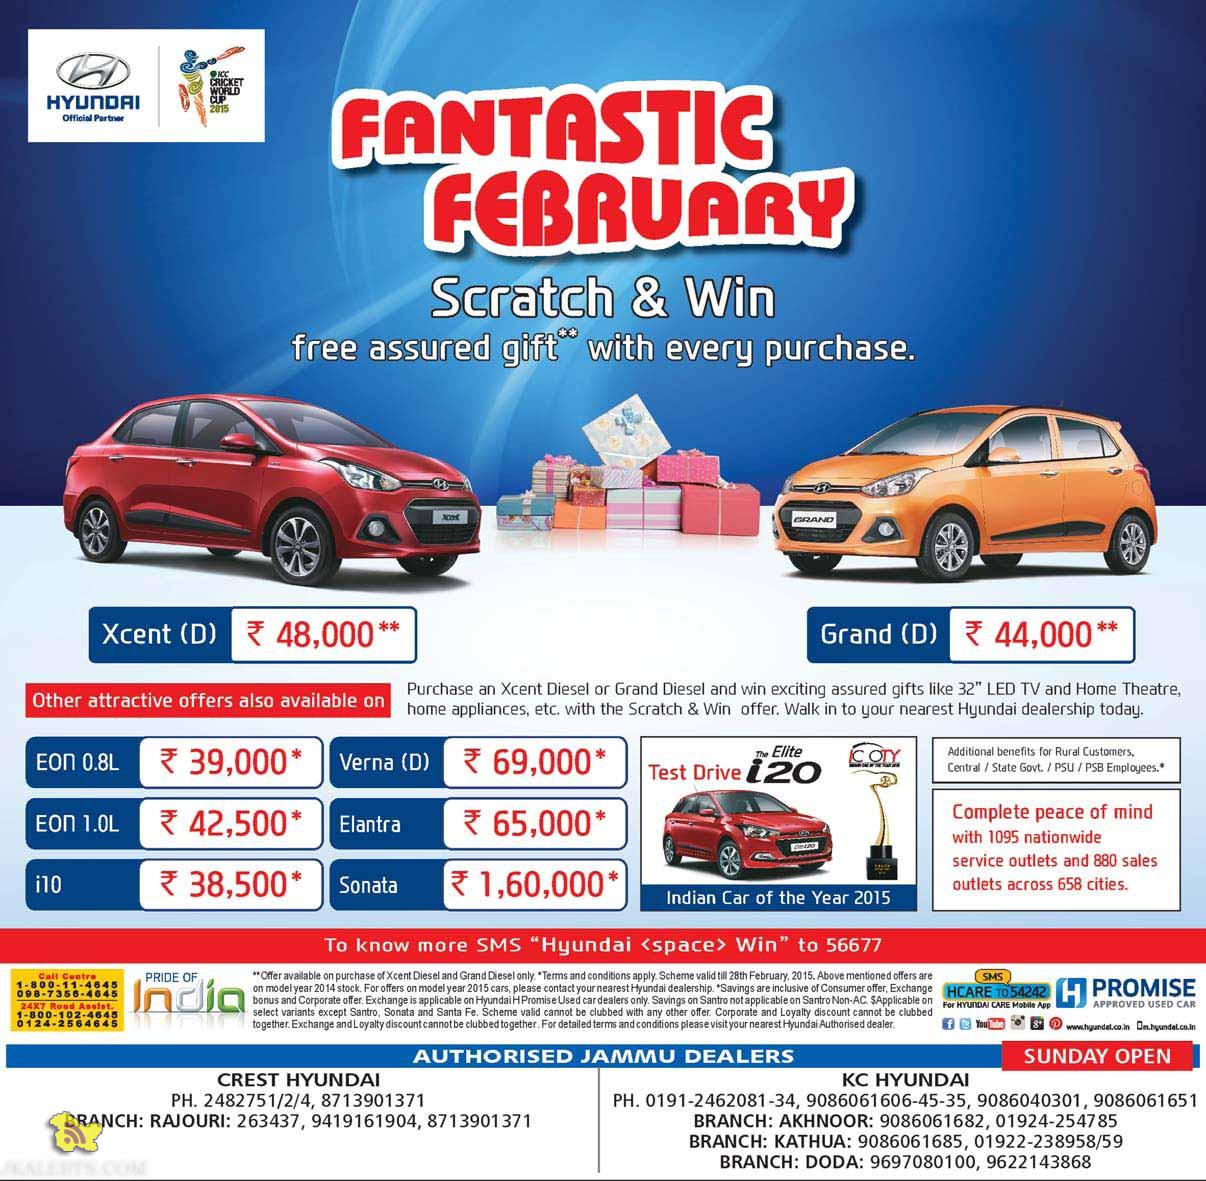 Hyundai Fantastic February Scratch and Win Offer